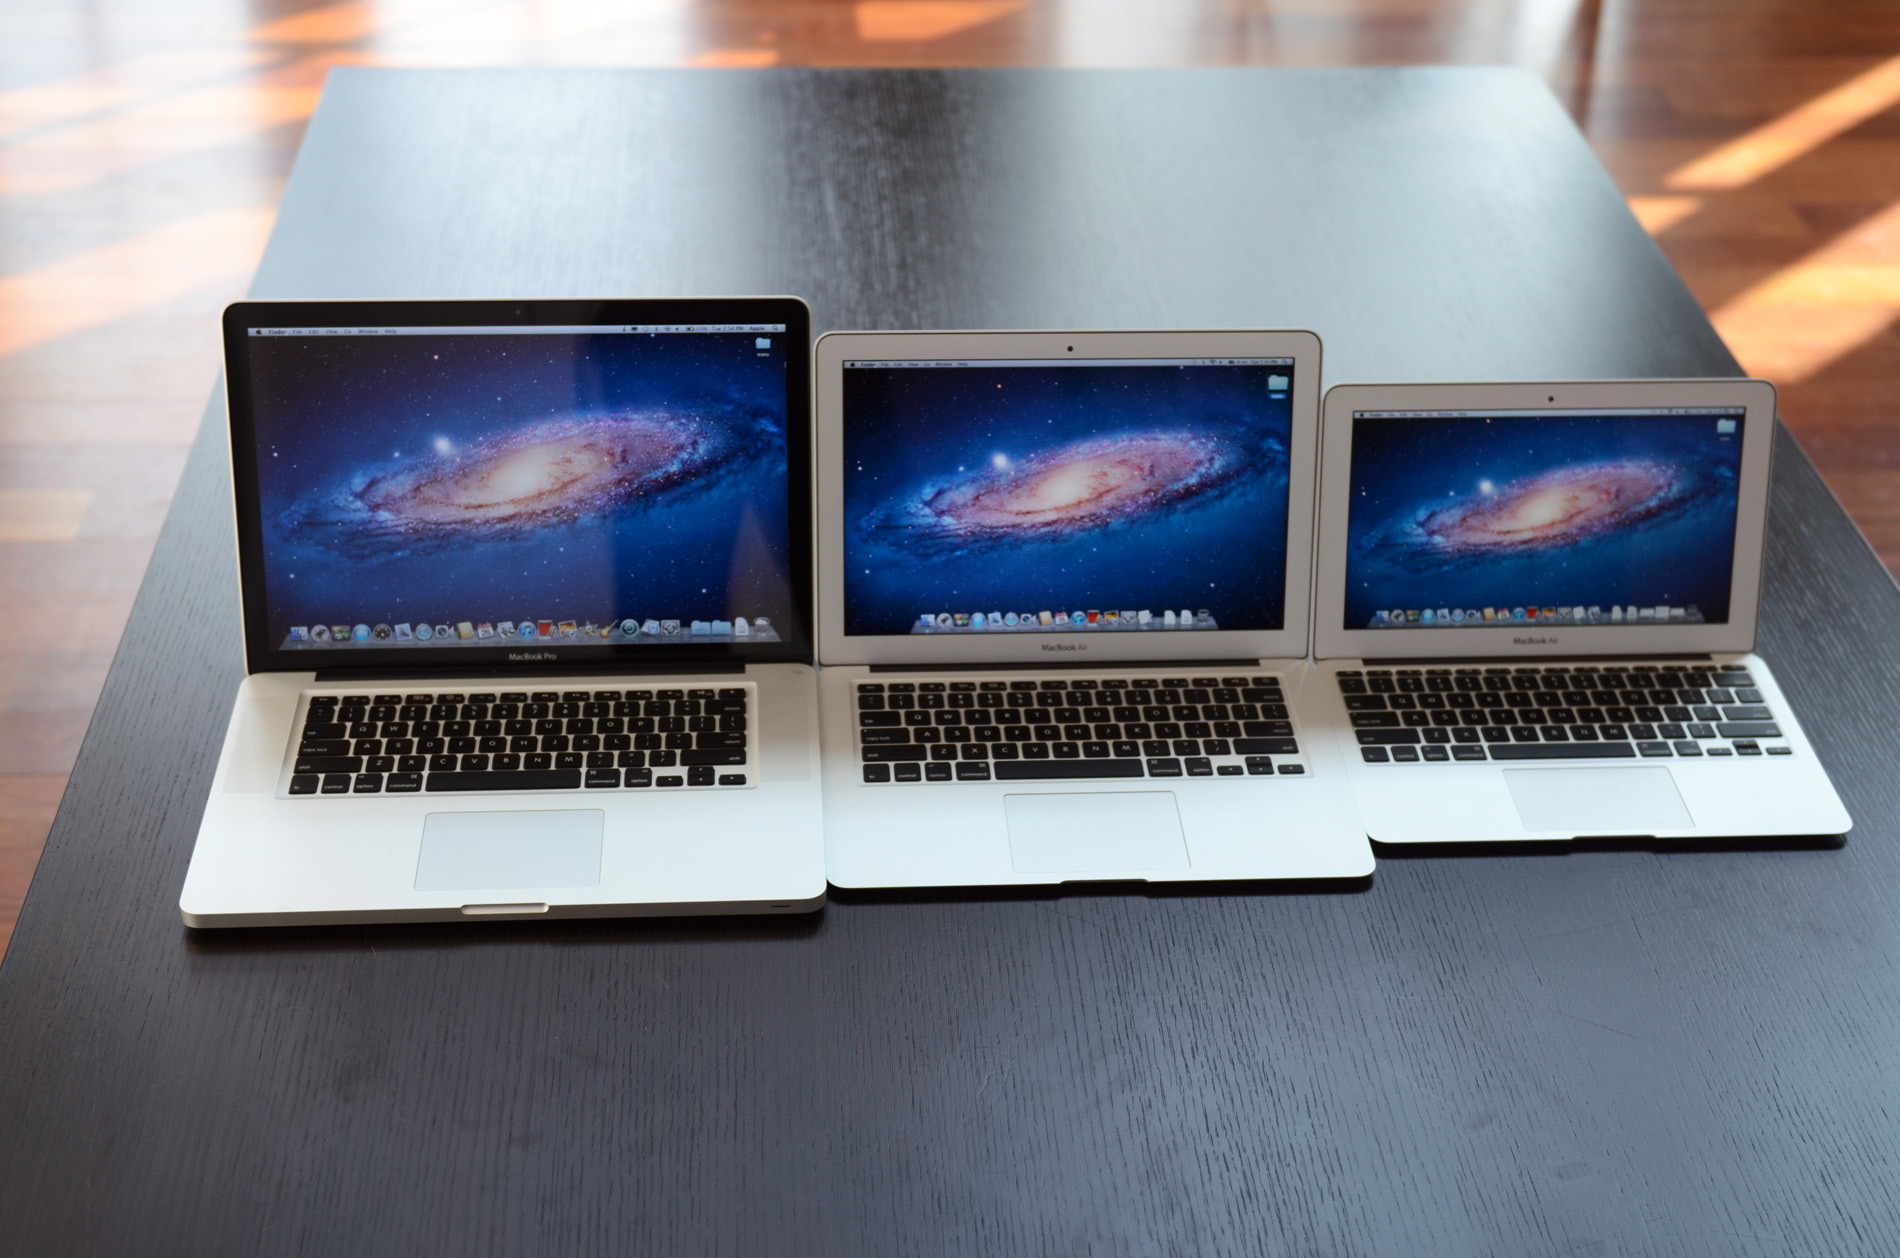 MacBook Air mỏng và nhẹ, ít thay đổi